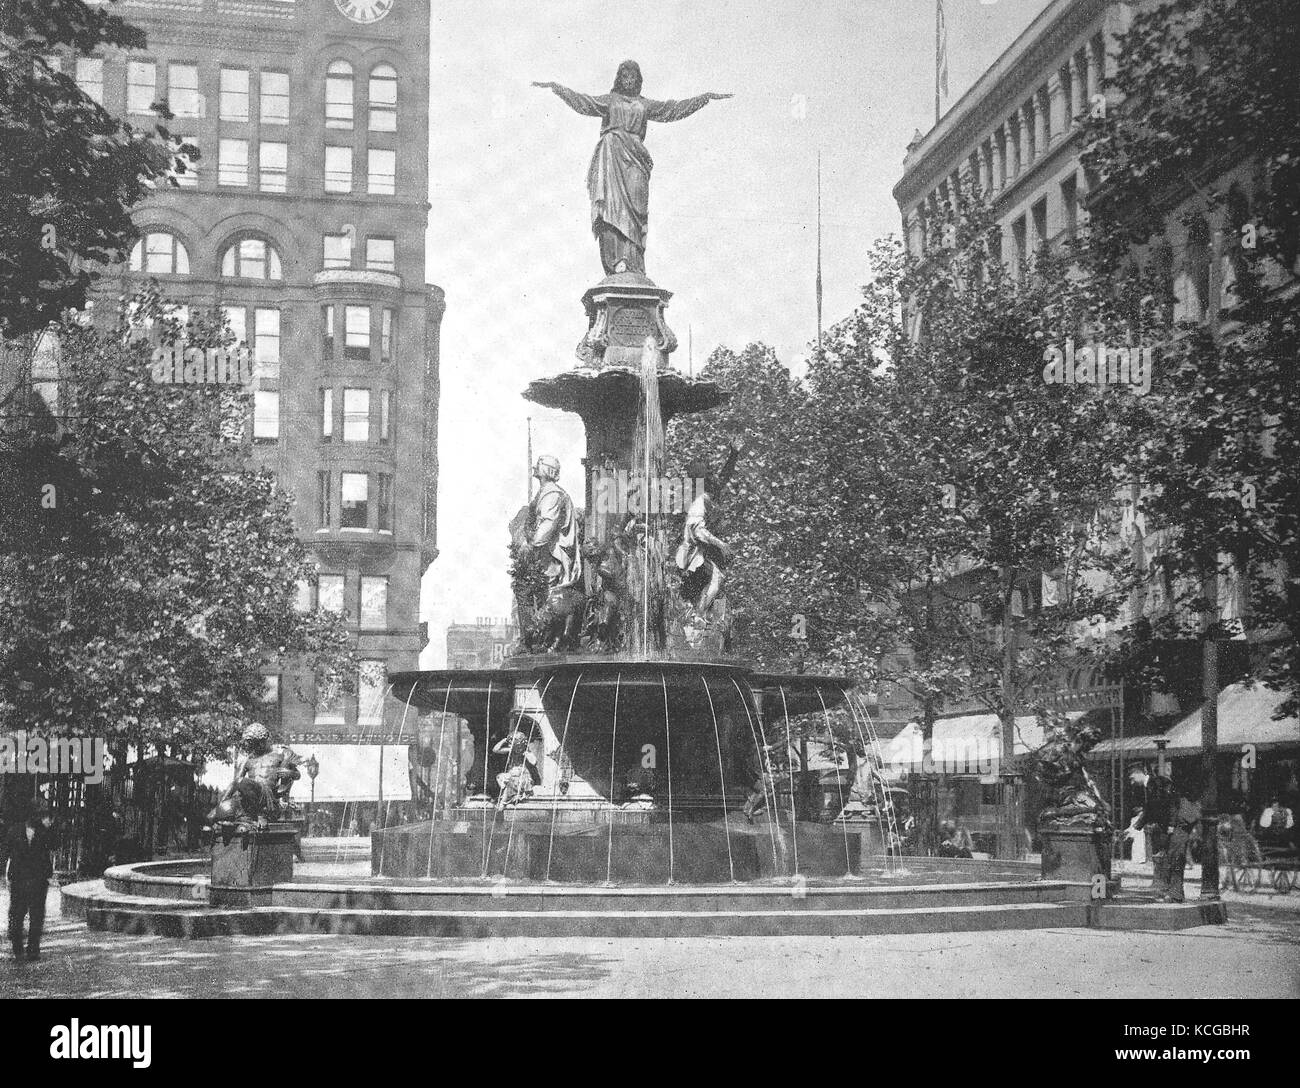 États-unis d'Amérique, Ohio State, la Fontaine à la place de la fontaine à Cincinnati, l'amélioration numérique reproduction d'une photo historique de l'année 1899 (estimé) Banque D'Images